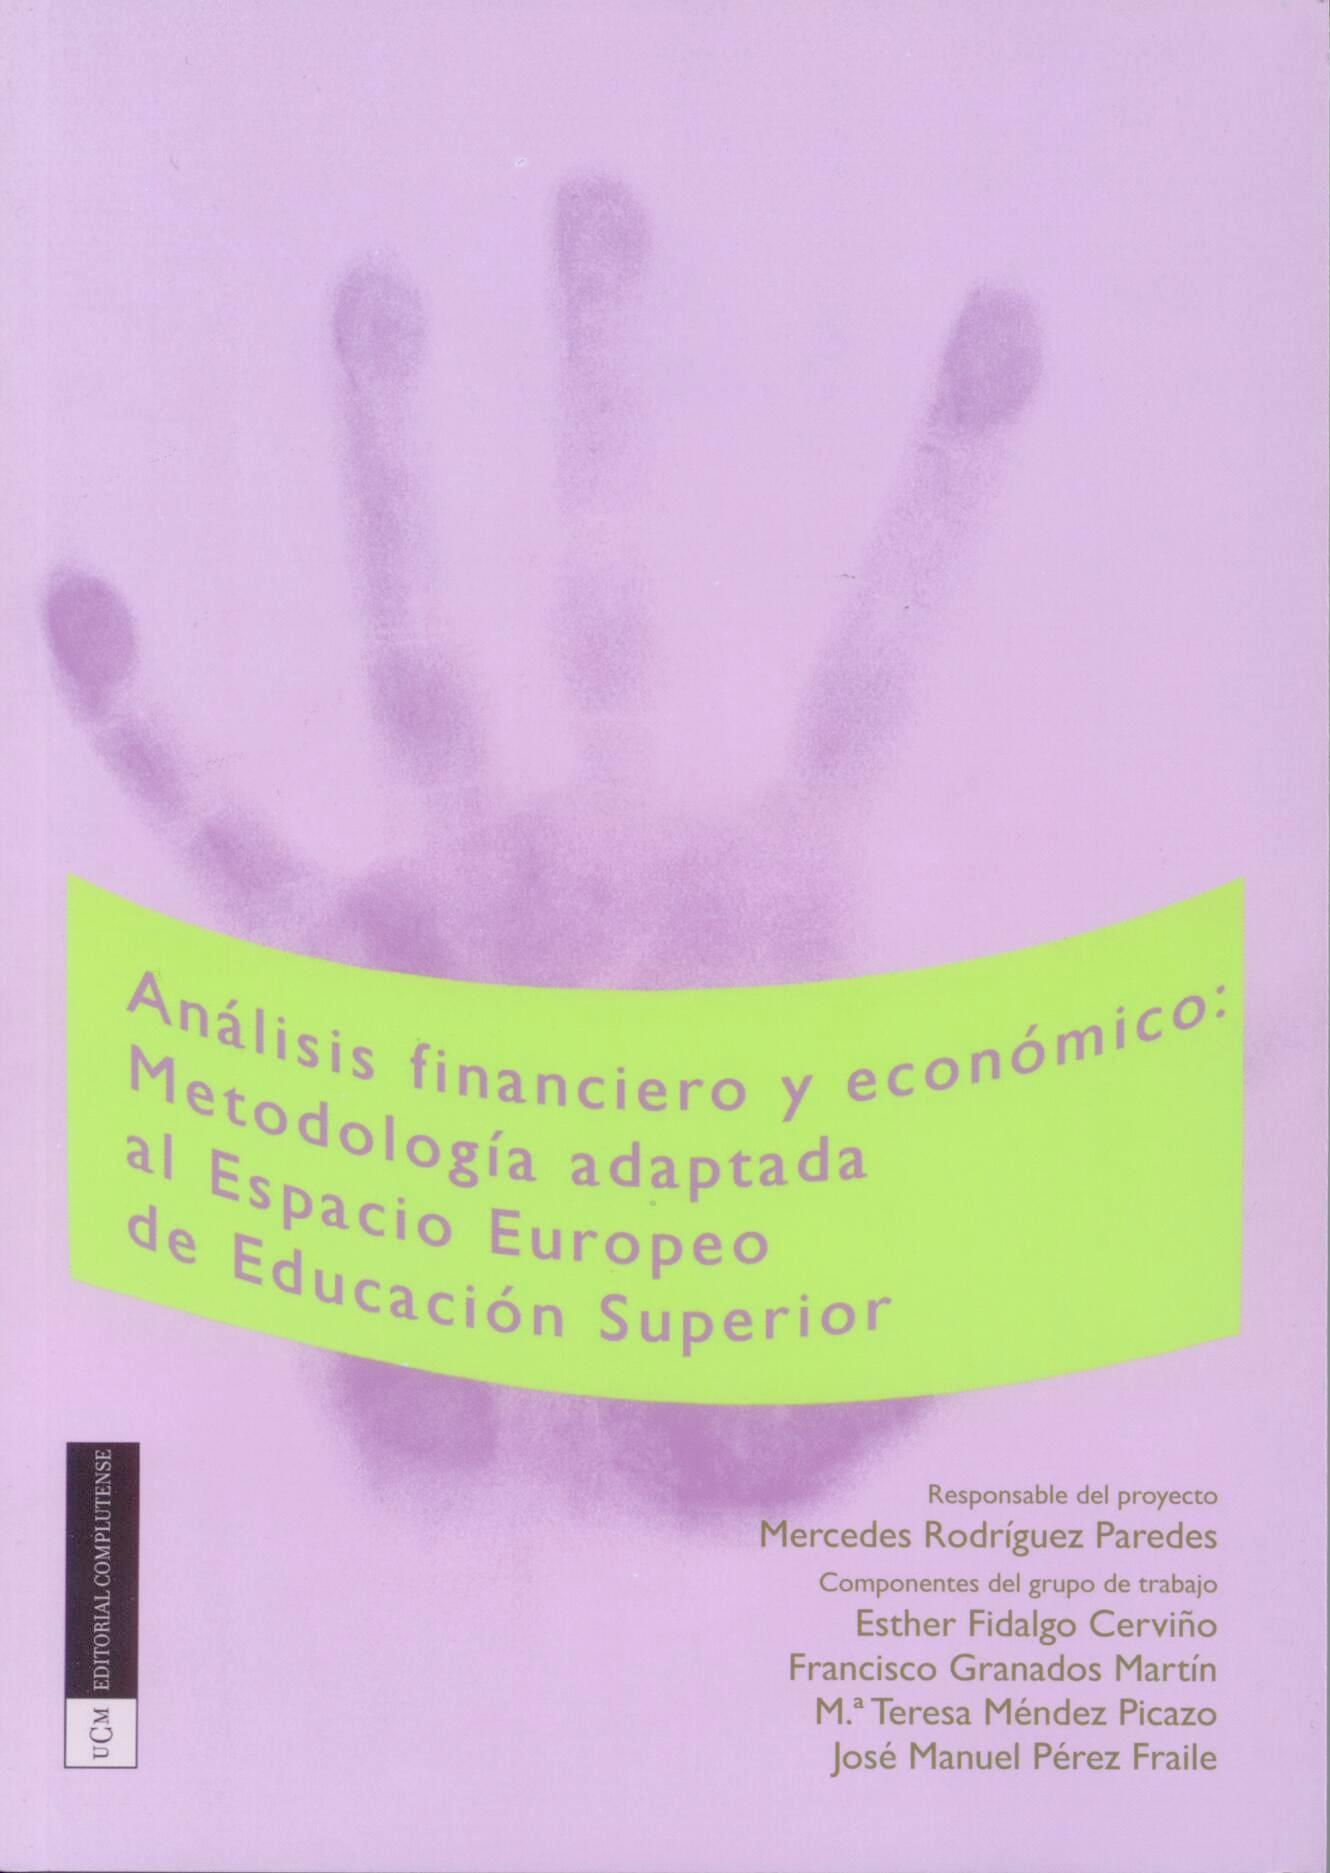 Analisis Financiero y Economico "Metodologia Adaptada al Espacio Europeo de Educacion Superior"